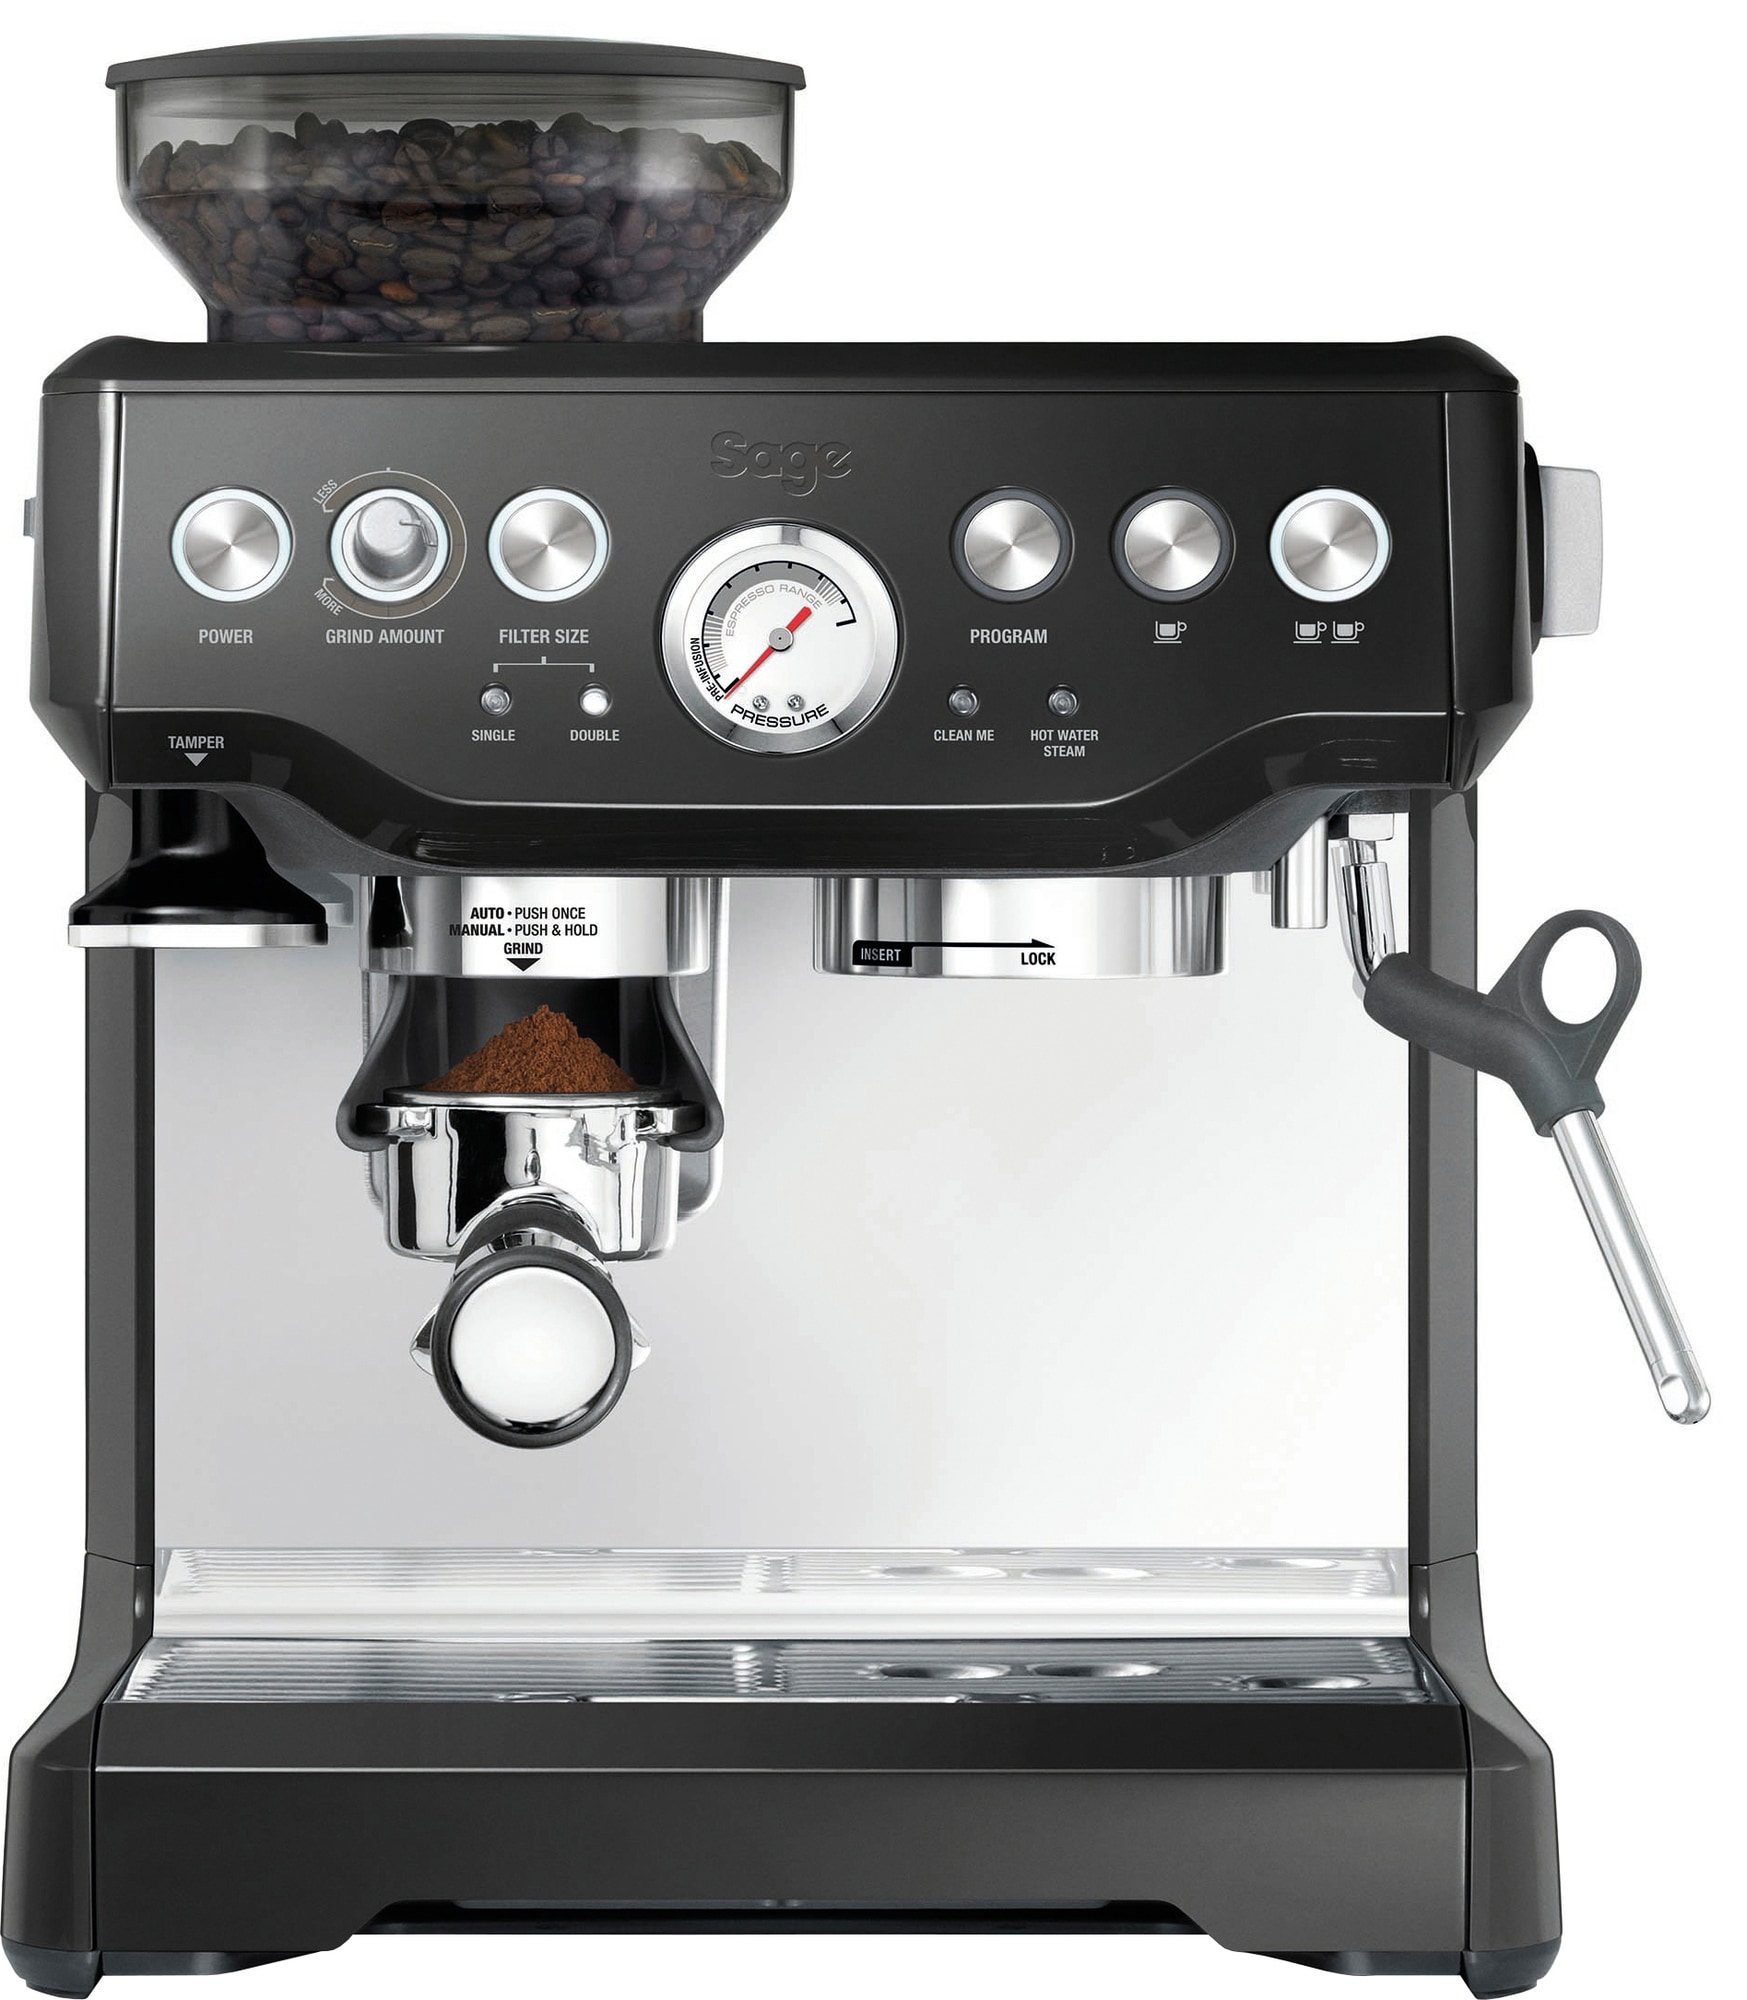 Busk skarp manipulere Sage Barista Express espressomaskine (blank sort) | Elgiganten